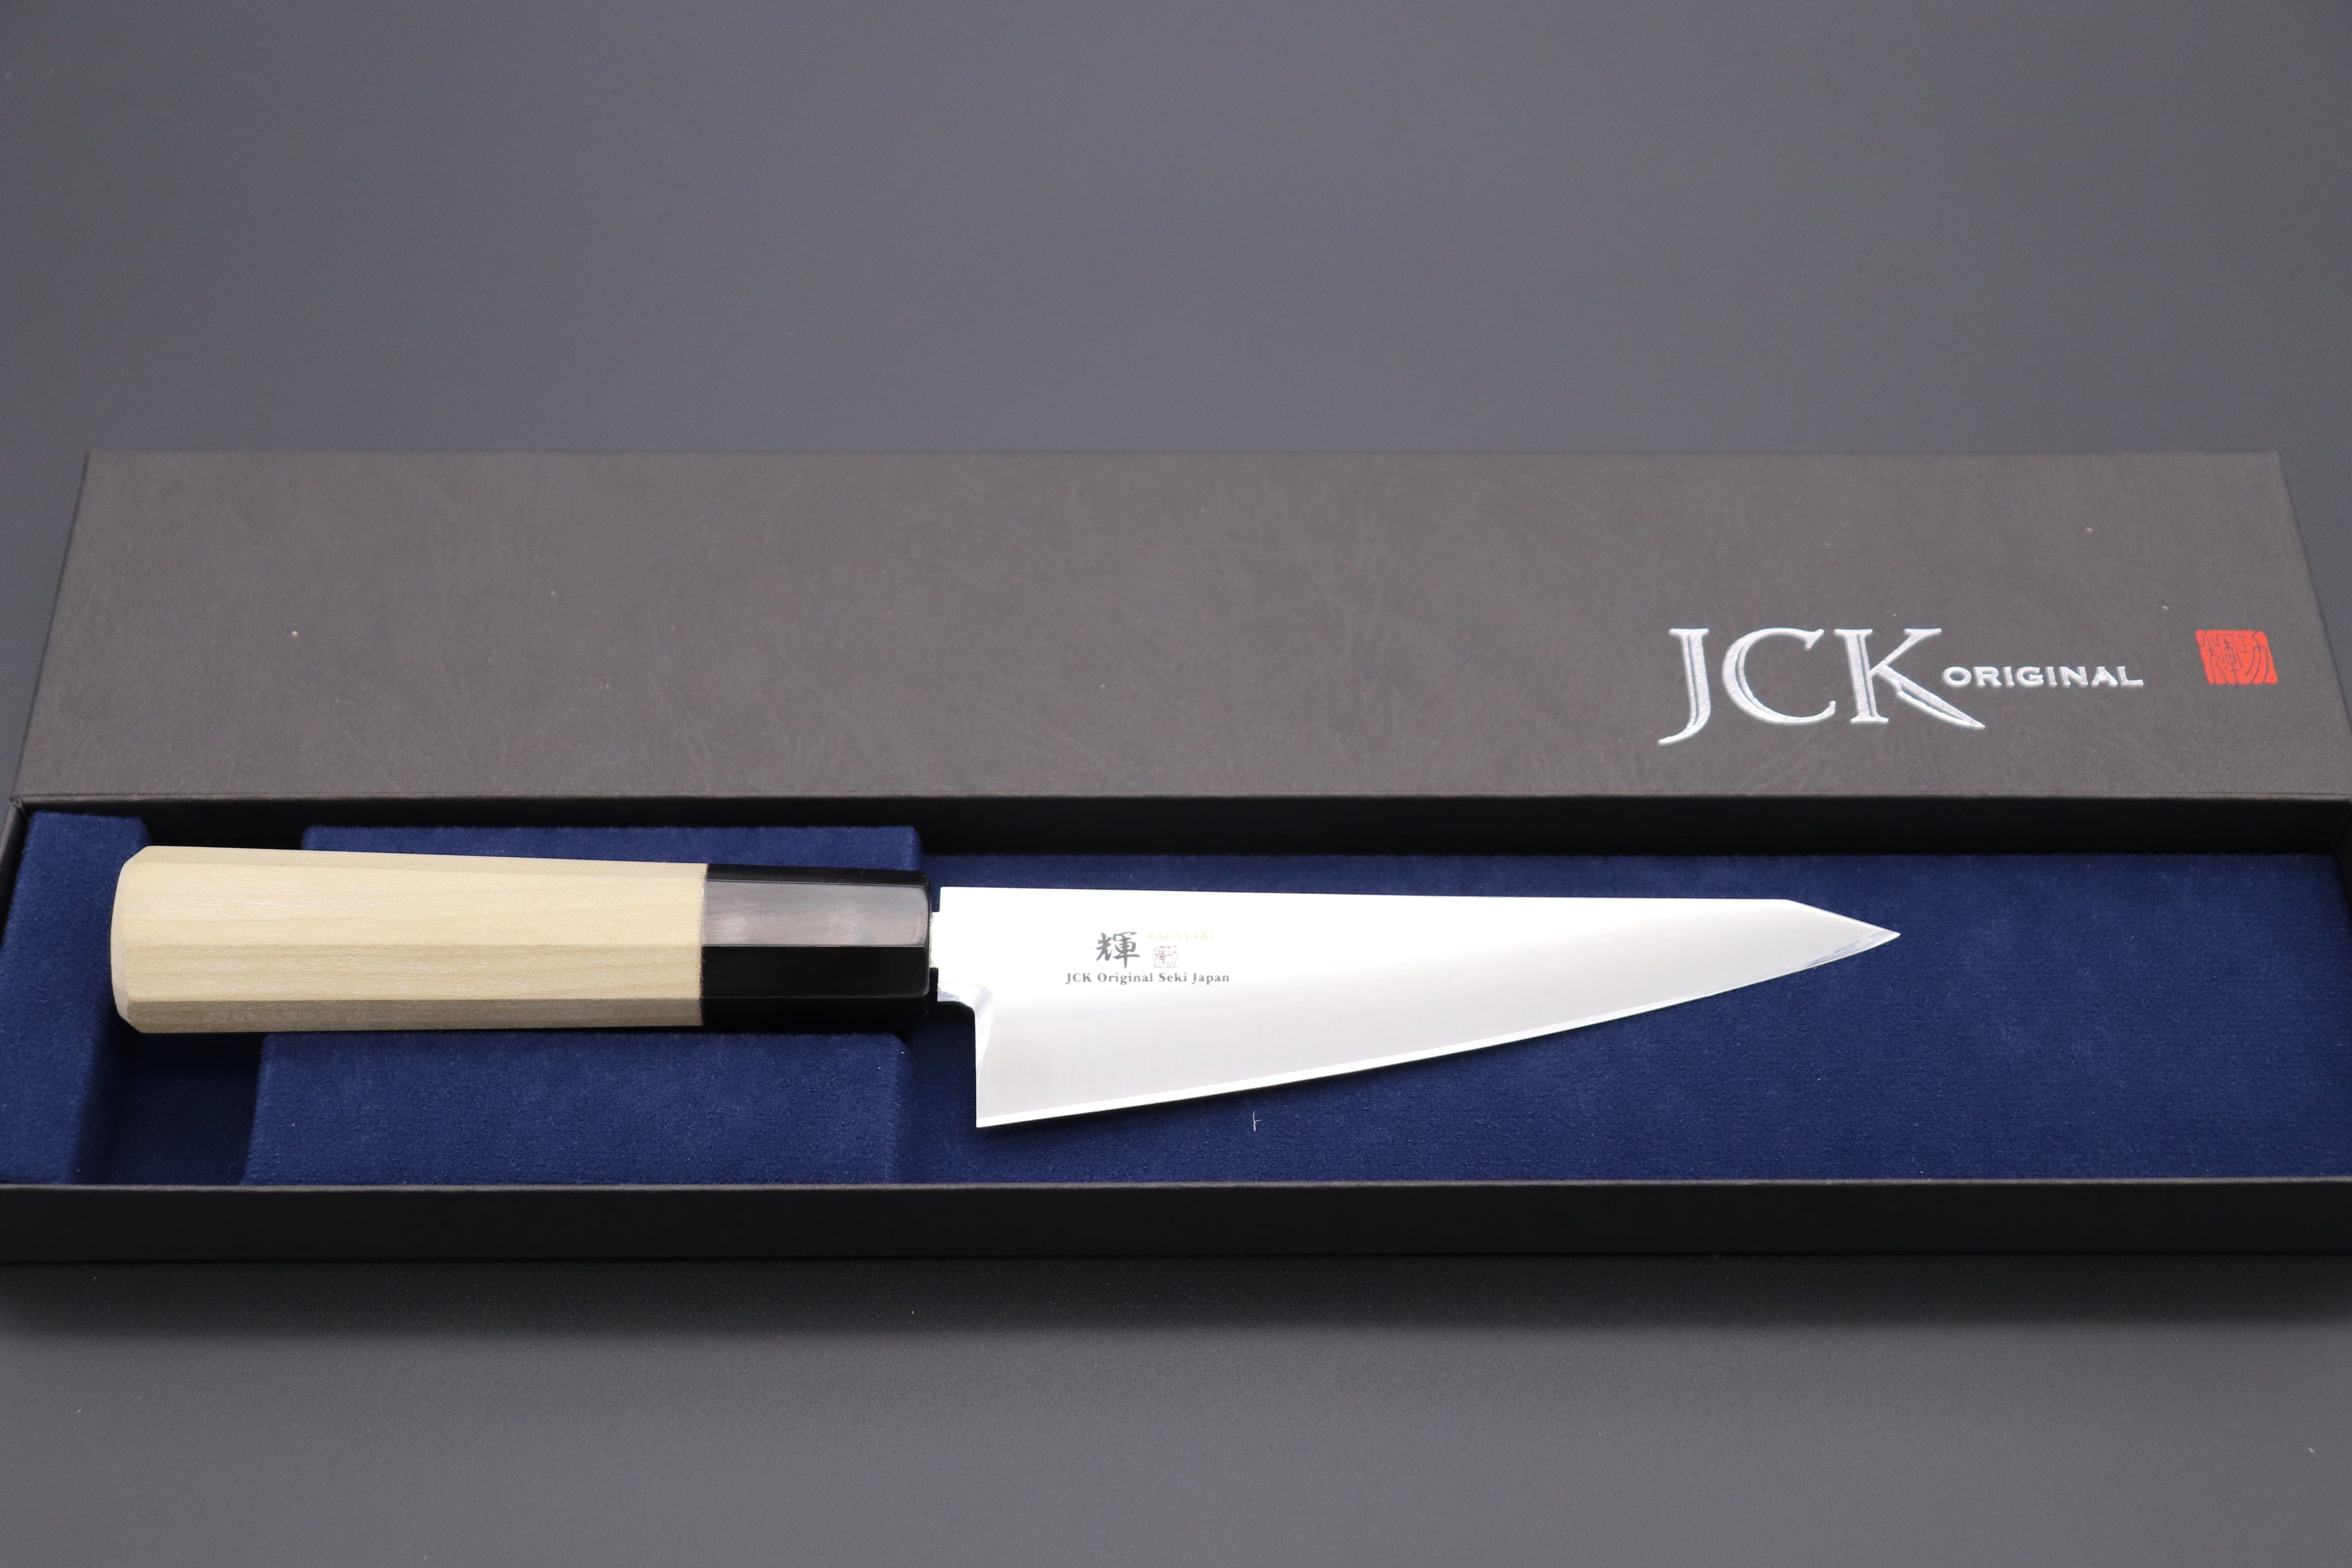 https://japanesechefsknife.com/cdn/shop/files/kagayaki-boning-knife-honesuki-jck-original-kagayaki-basic-wa-series-vg-10-kv-4w-wa-honesuki-boning-knife-41429617901851.jpg?v=1684215233